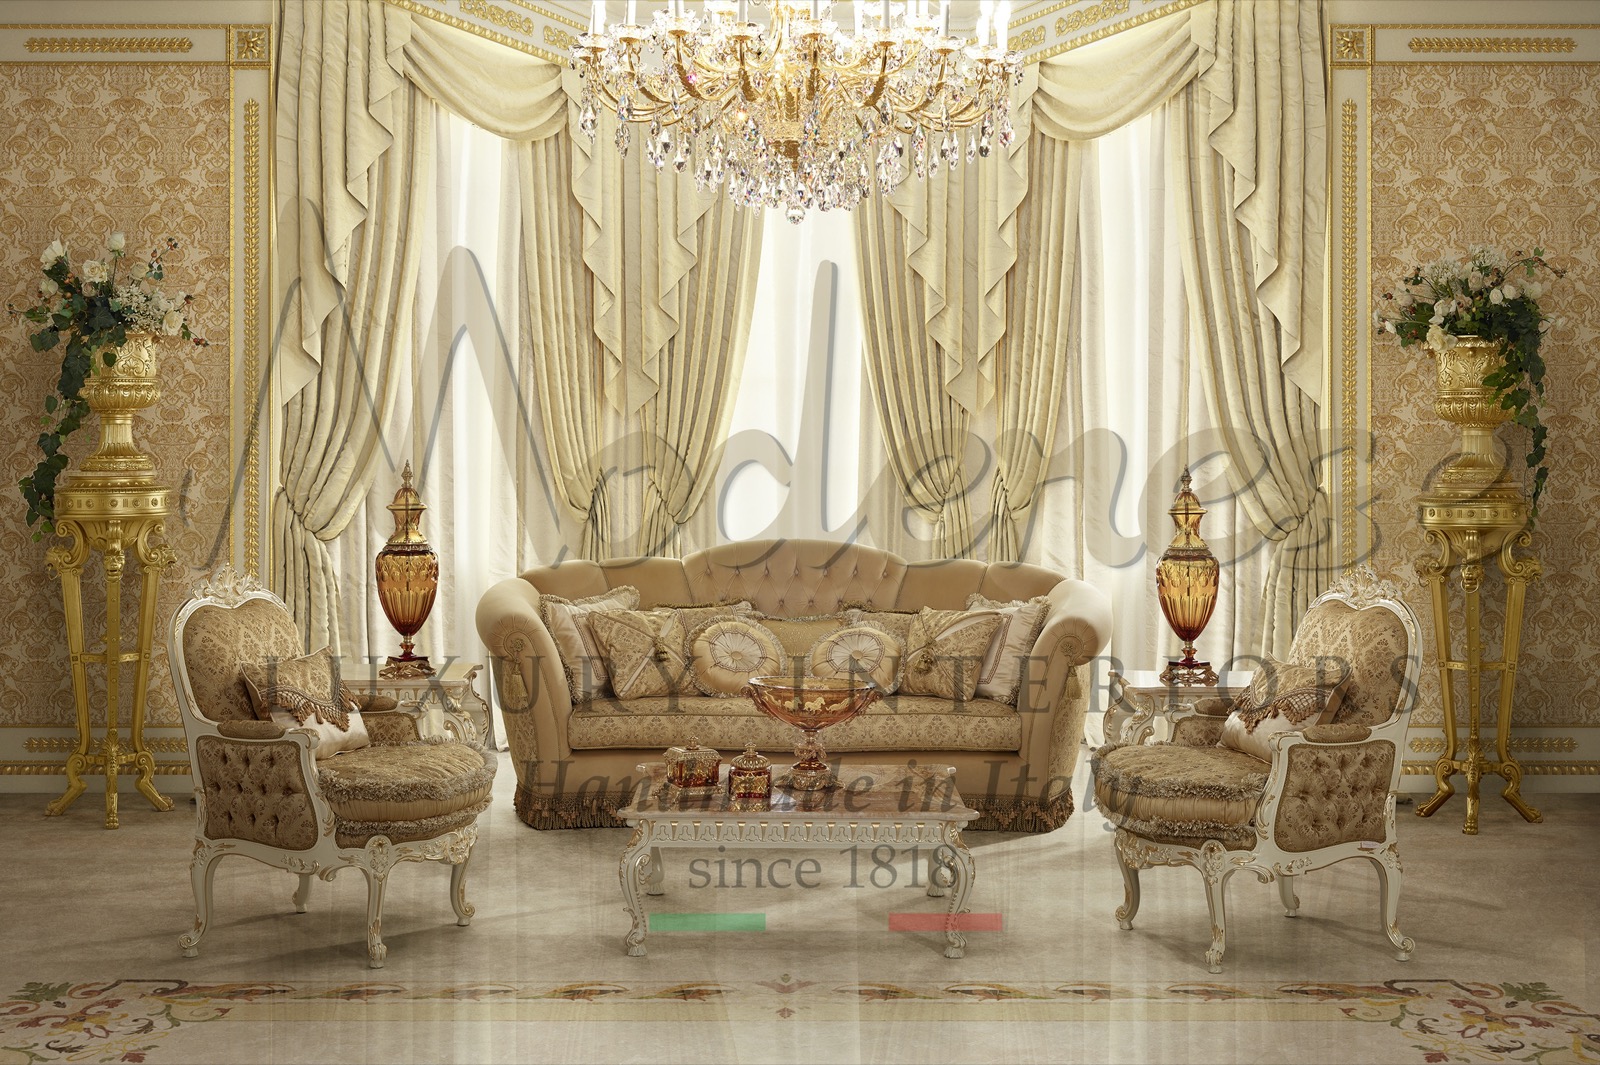 индивидуальная роскошная мебель ручной работы в Италии в королевском стиле в итальянском вкусе дизайн интерьера проекты под ключ вилла дворец домашний декор